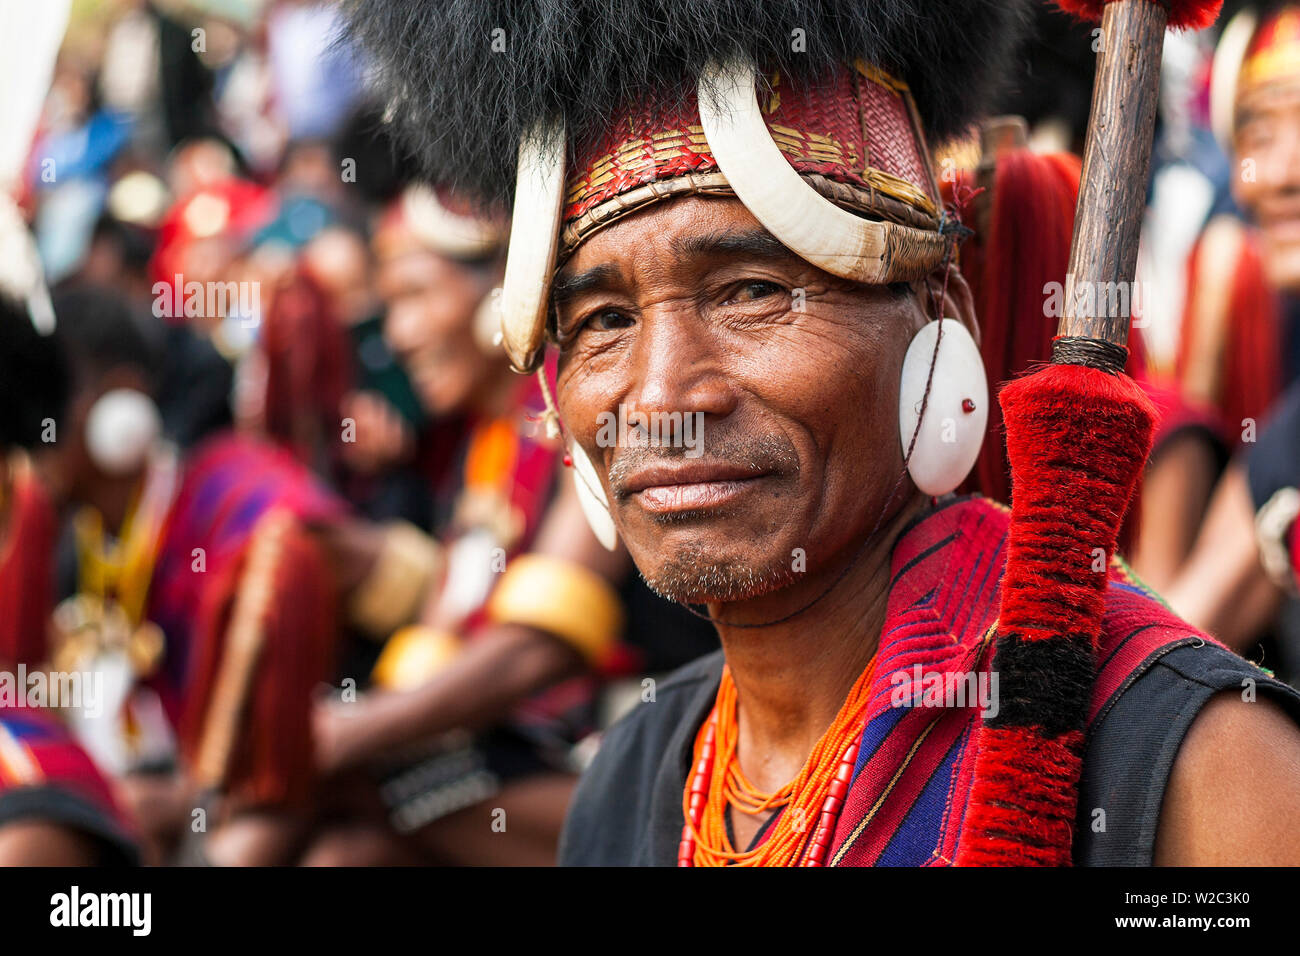 Portrait de Chang tribesman, Hornbill Festival, Nagaland, N.E. L'Inde Banque D'Images